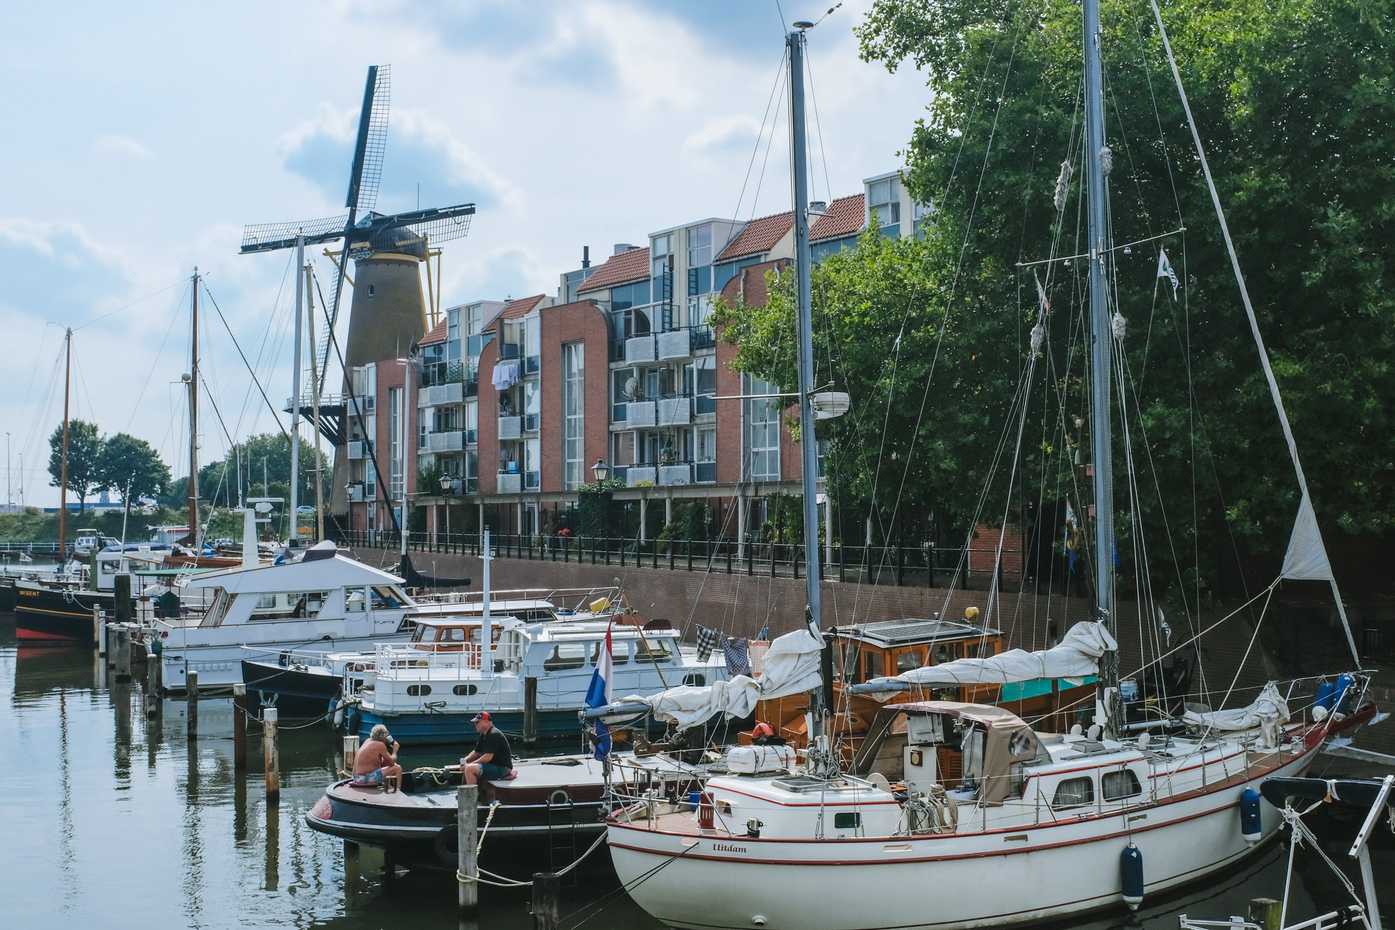 Boats in Rotterdam, near a windmill